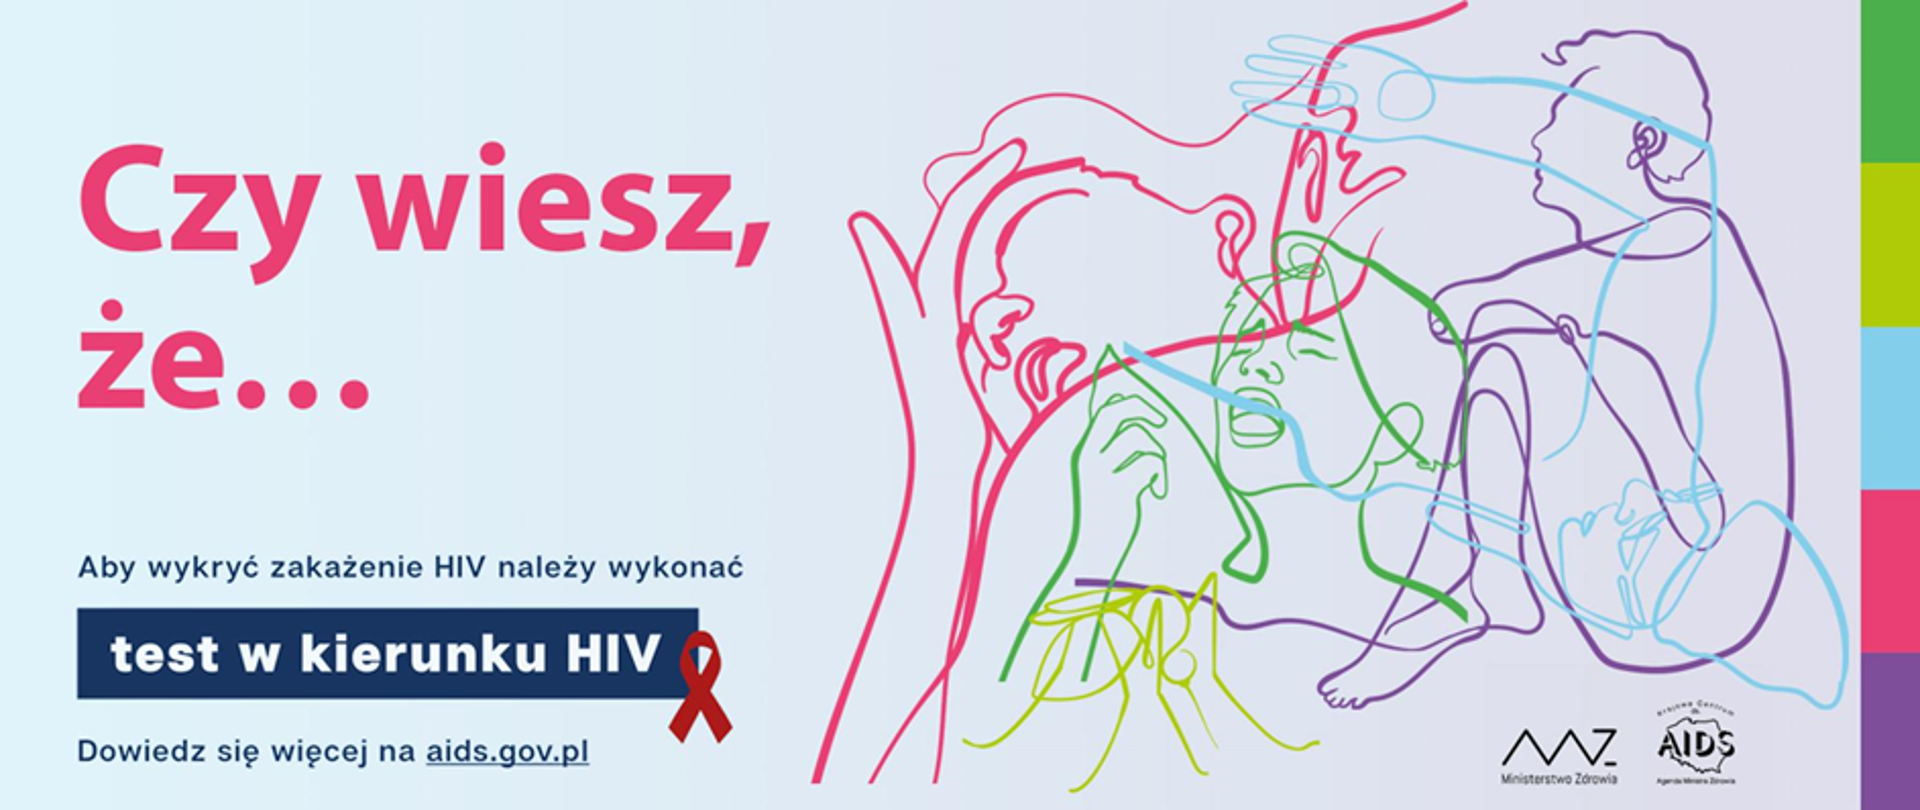 "Czy wiesz, że" - kampania przeciw HIV